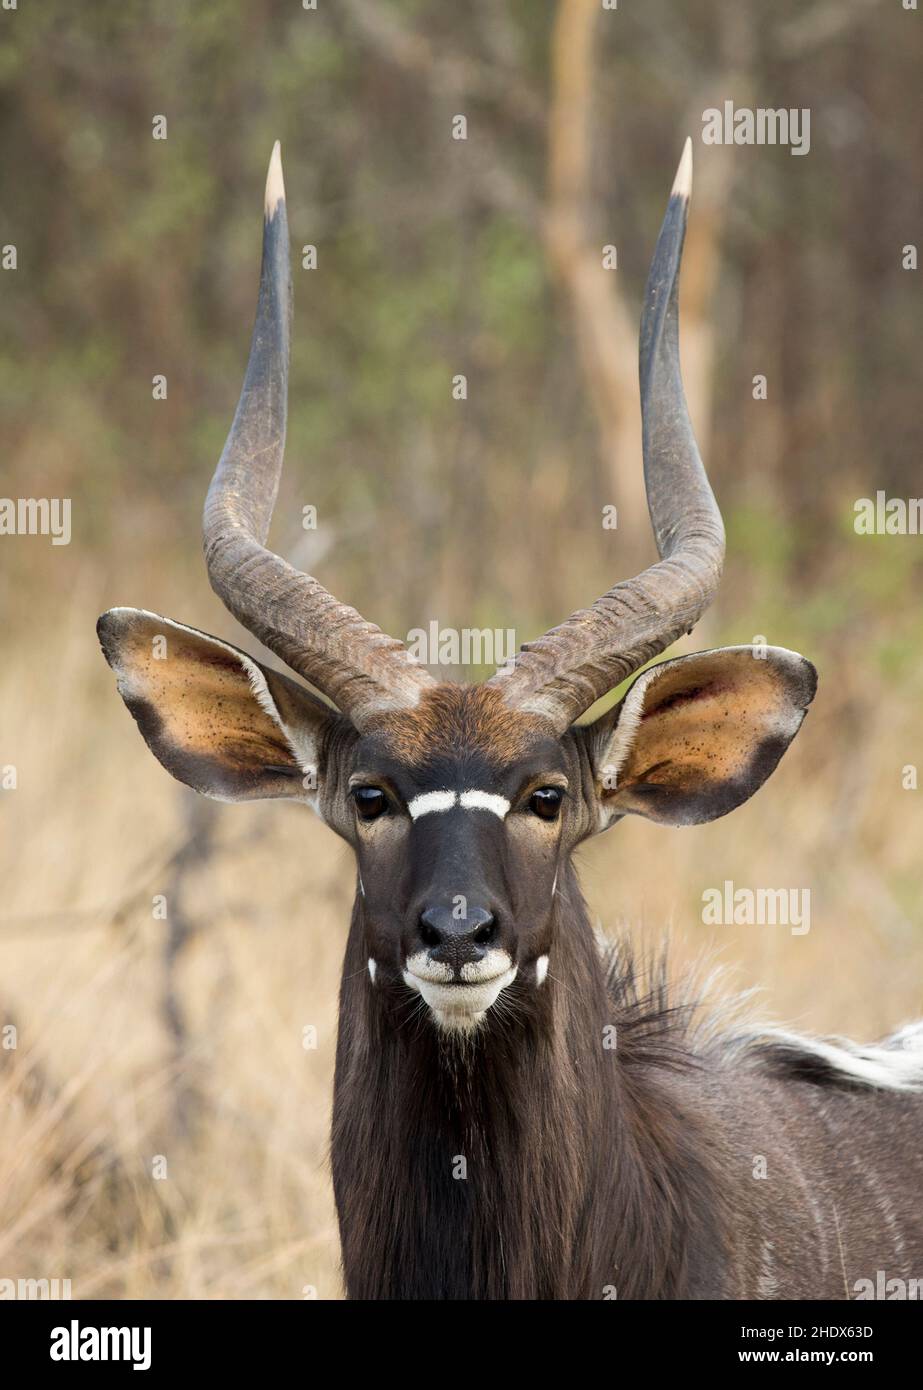 Ein Nahaufnahme-Porträt einer Nyala (Tragelaphus angasii)-Antilope, die die Kamera mit seinen langen Hörnern, großen Ohren und seinem schönen dunkelbraunen Mantel anschaut. Stockfoto